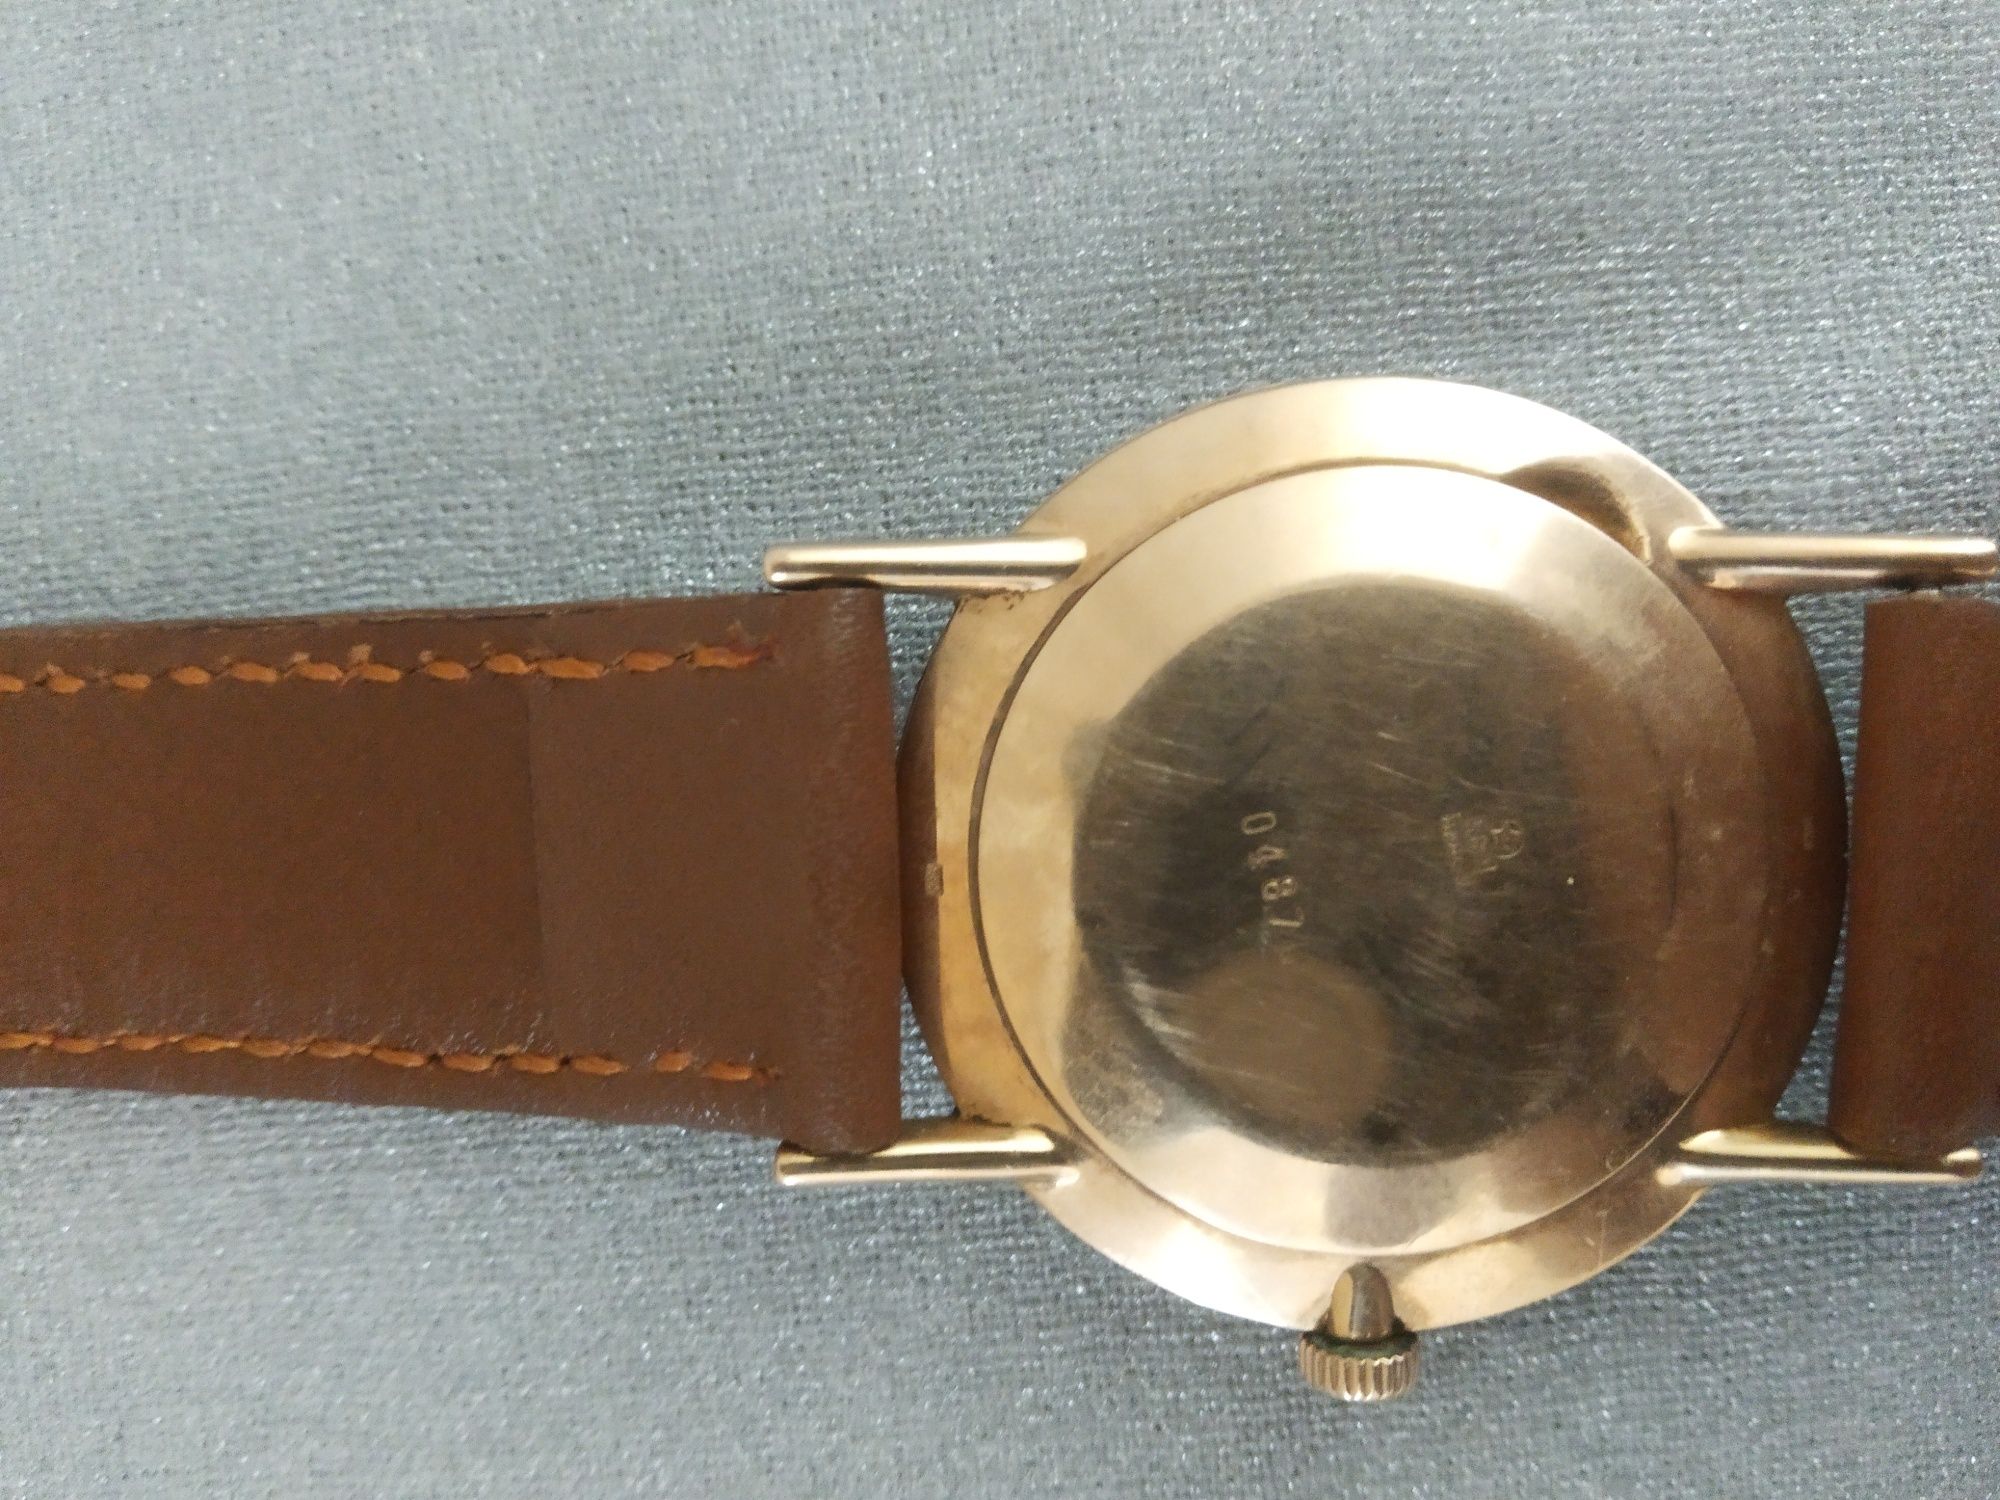 СРОЧНО редкие золотые часы Вымпел 1963 год